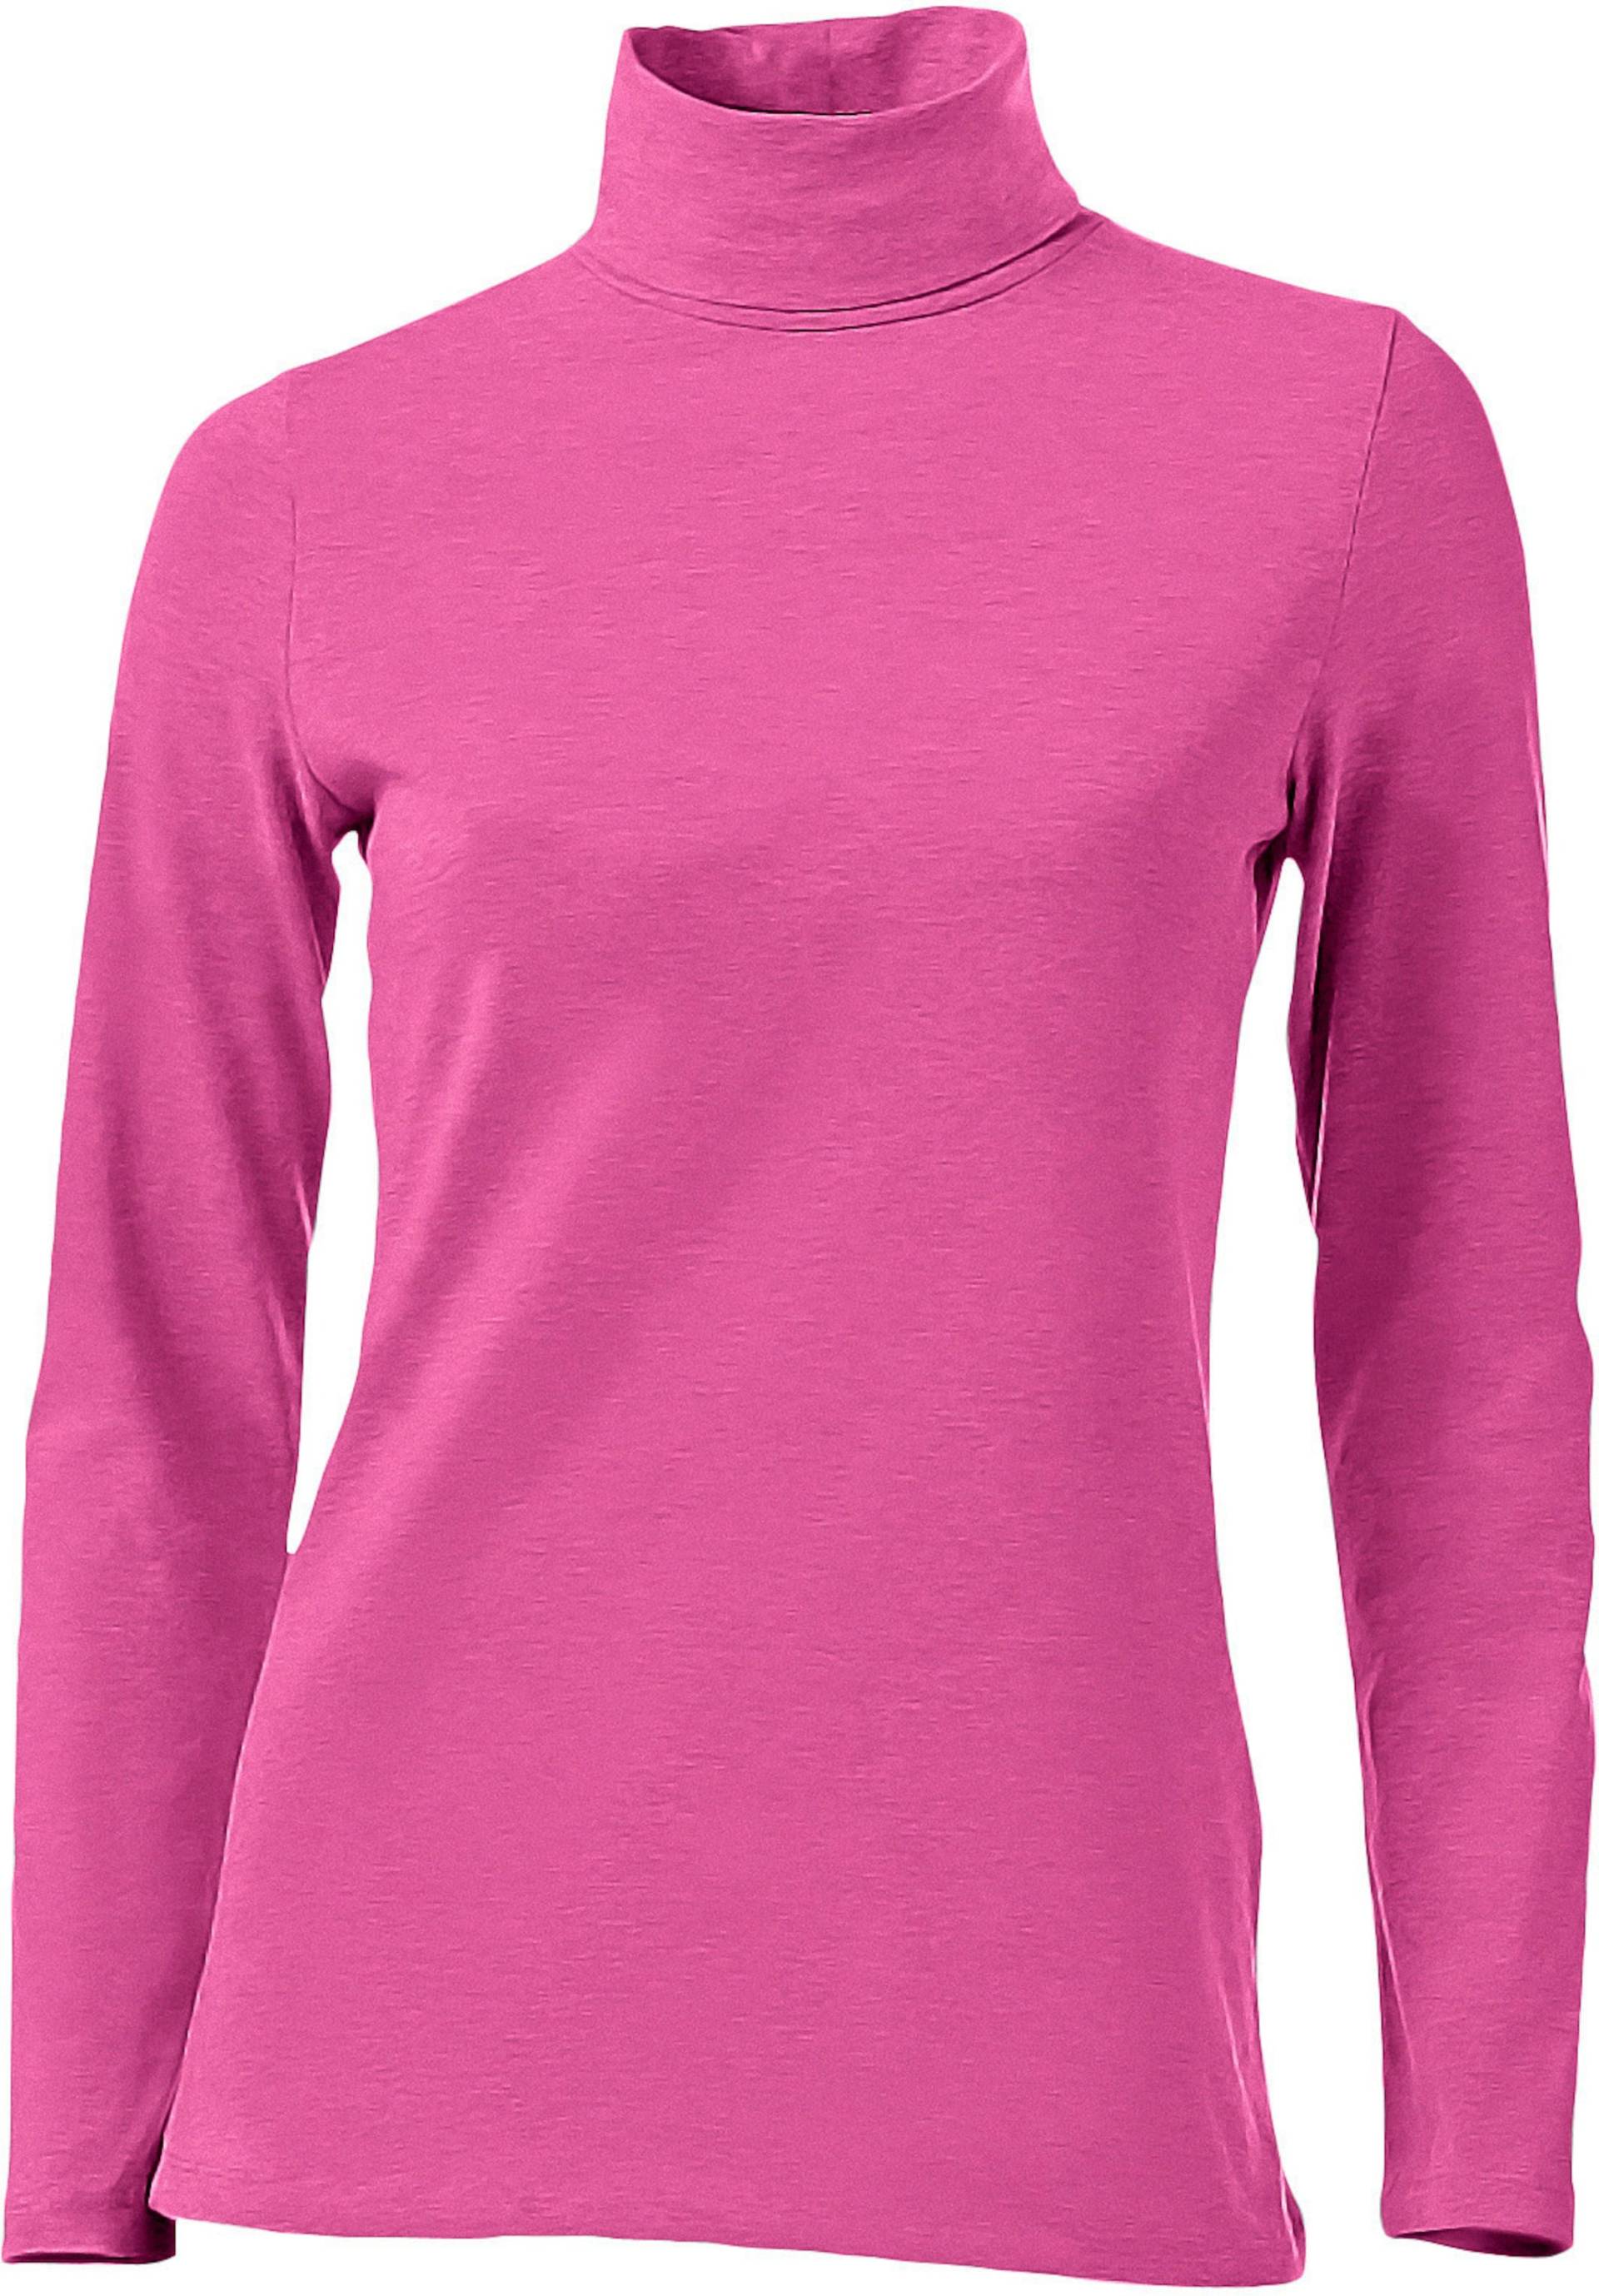 Rollkragen-Shirt in pink von heine